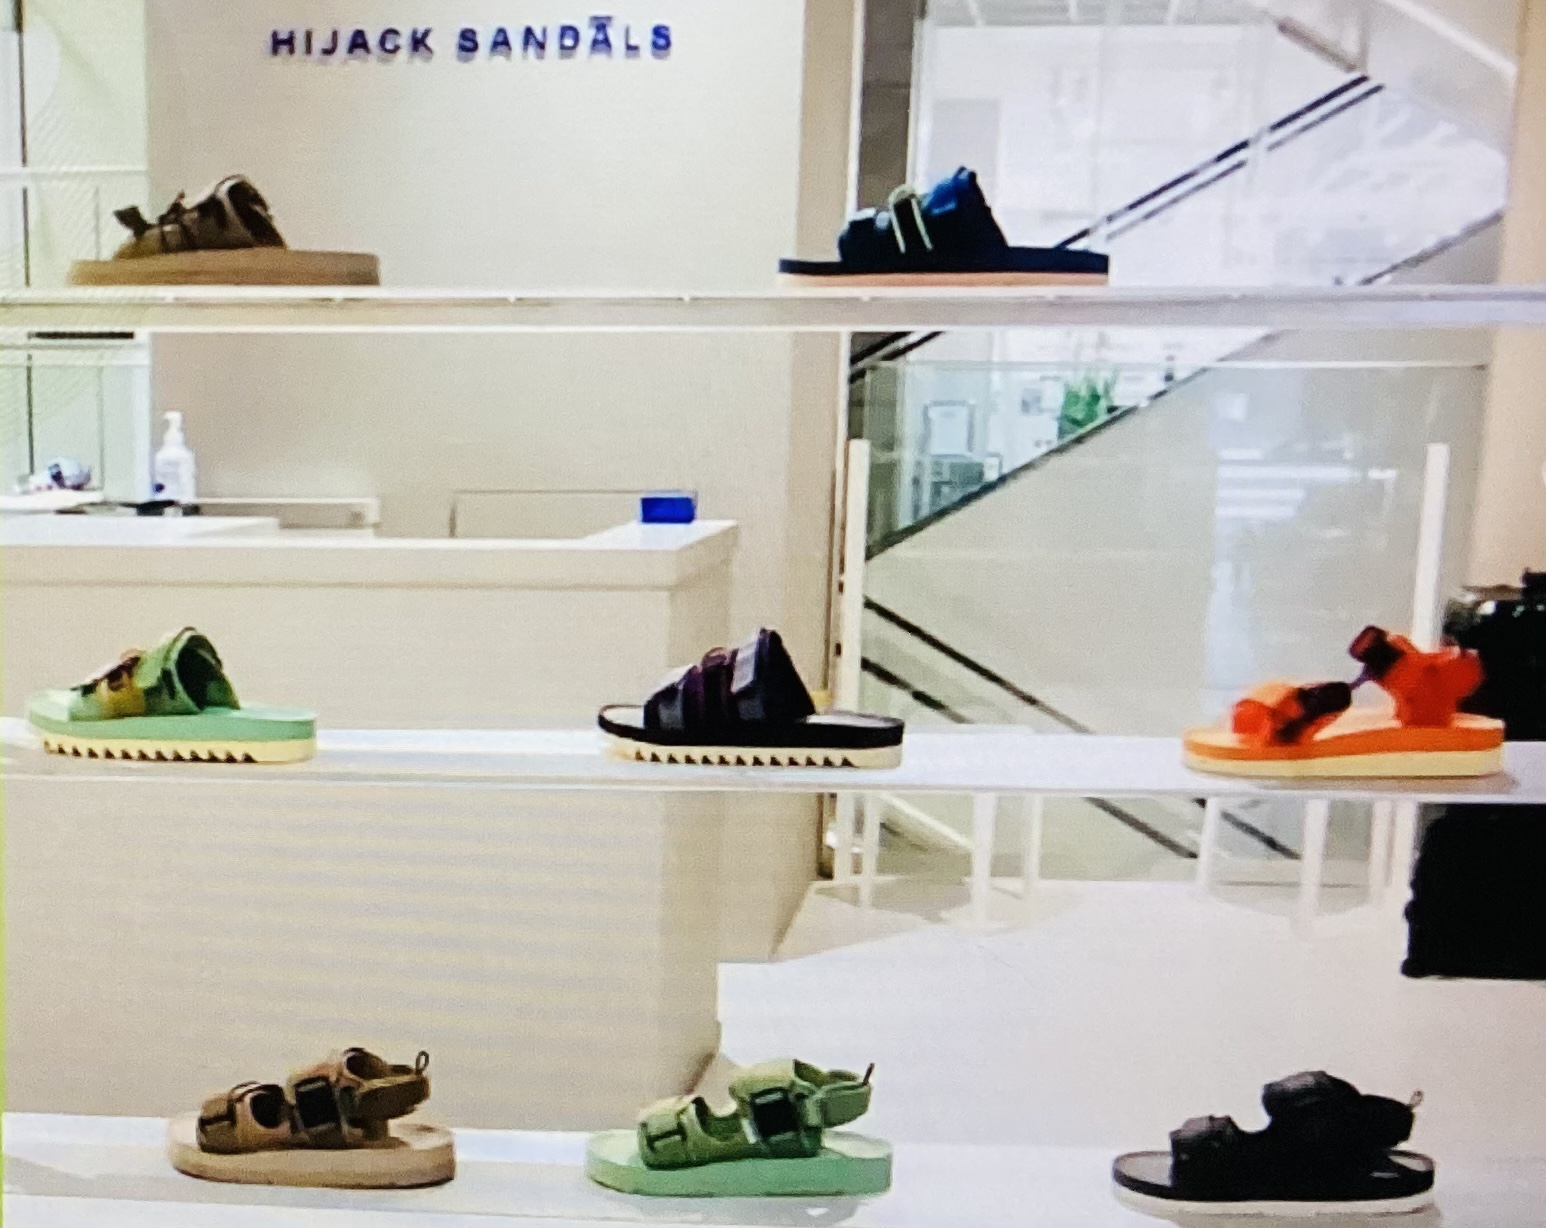 Hebat Hijack Sandals Brand Asal Bandung yang Mulai Merambah ke Pasar Internasional, Kini Punya Toko di Jepang